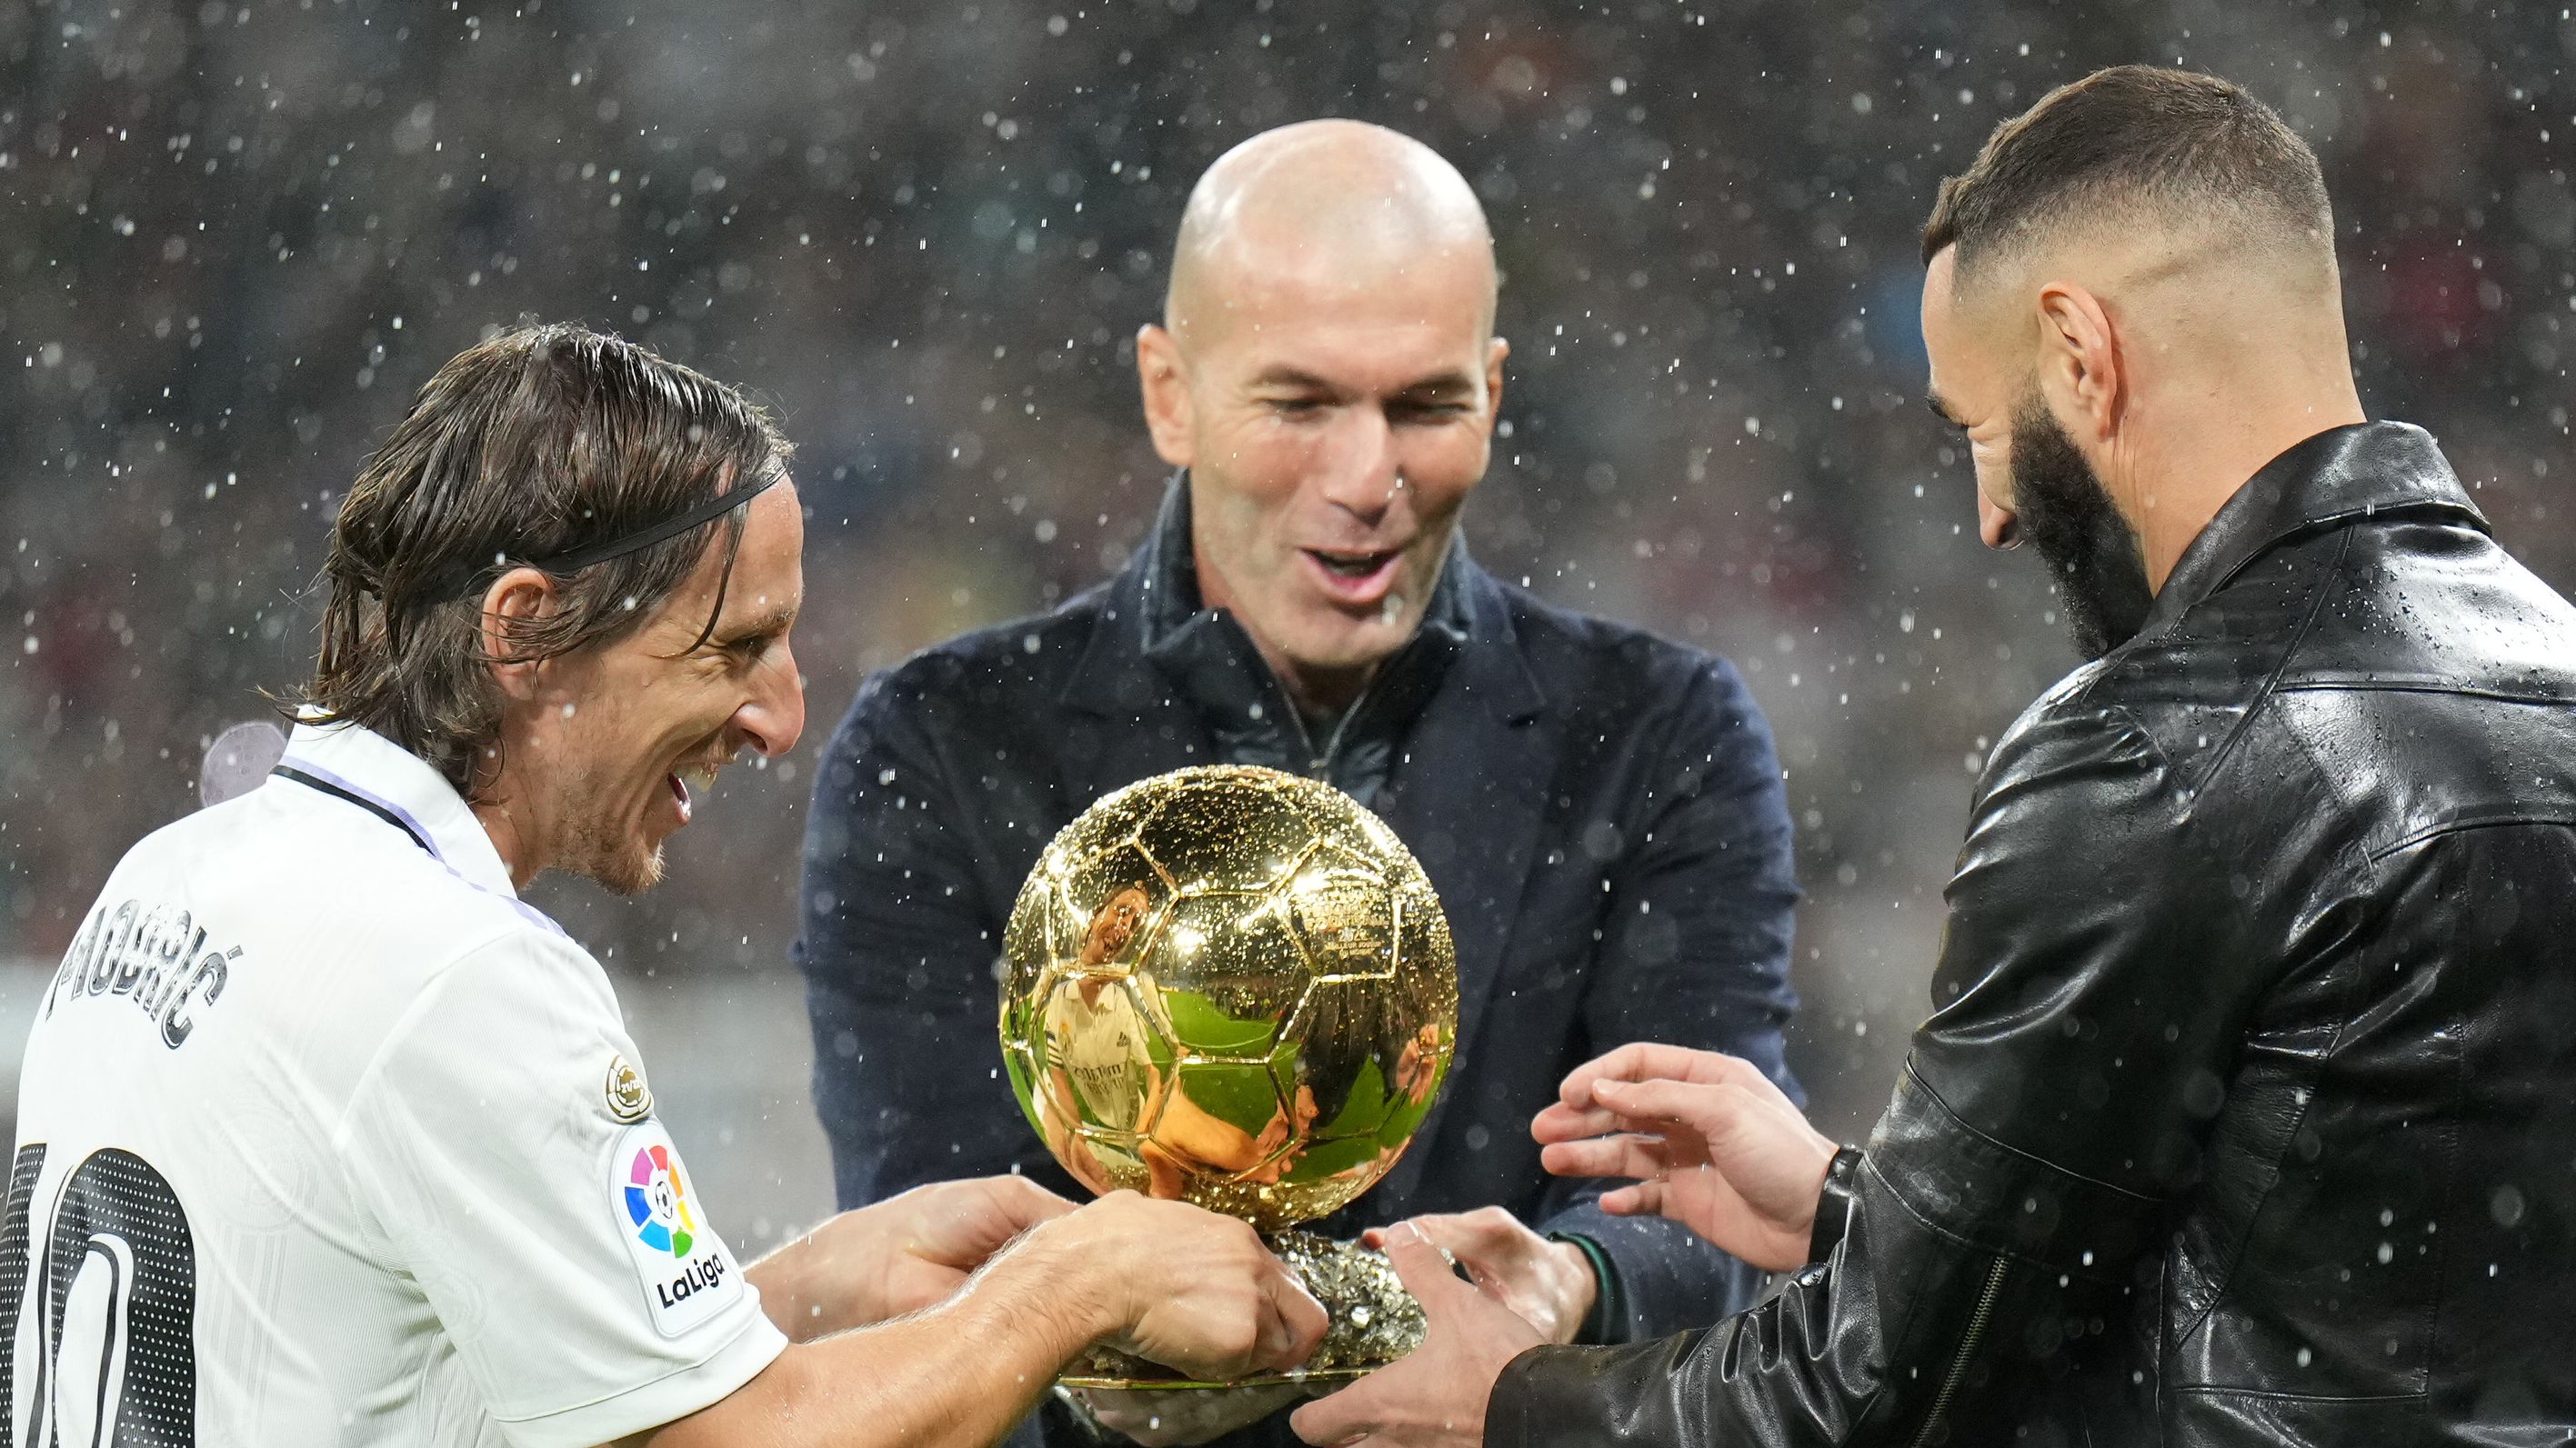 Benzema e Modric venceram a Bola de Ouro atuando pelo Real Madrid, os únicos após Cristiano Ronaldo (Crédito: Getty Images)